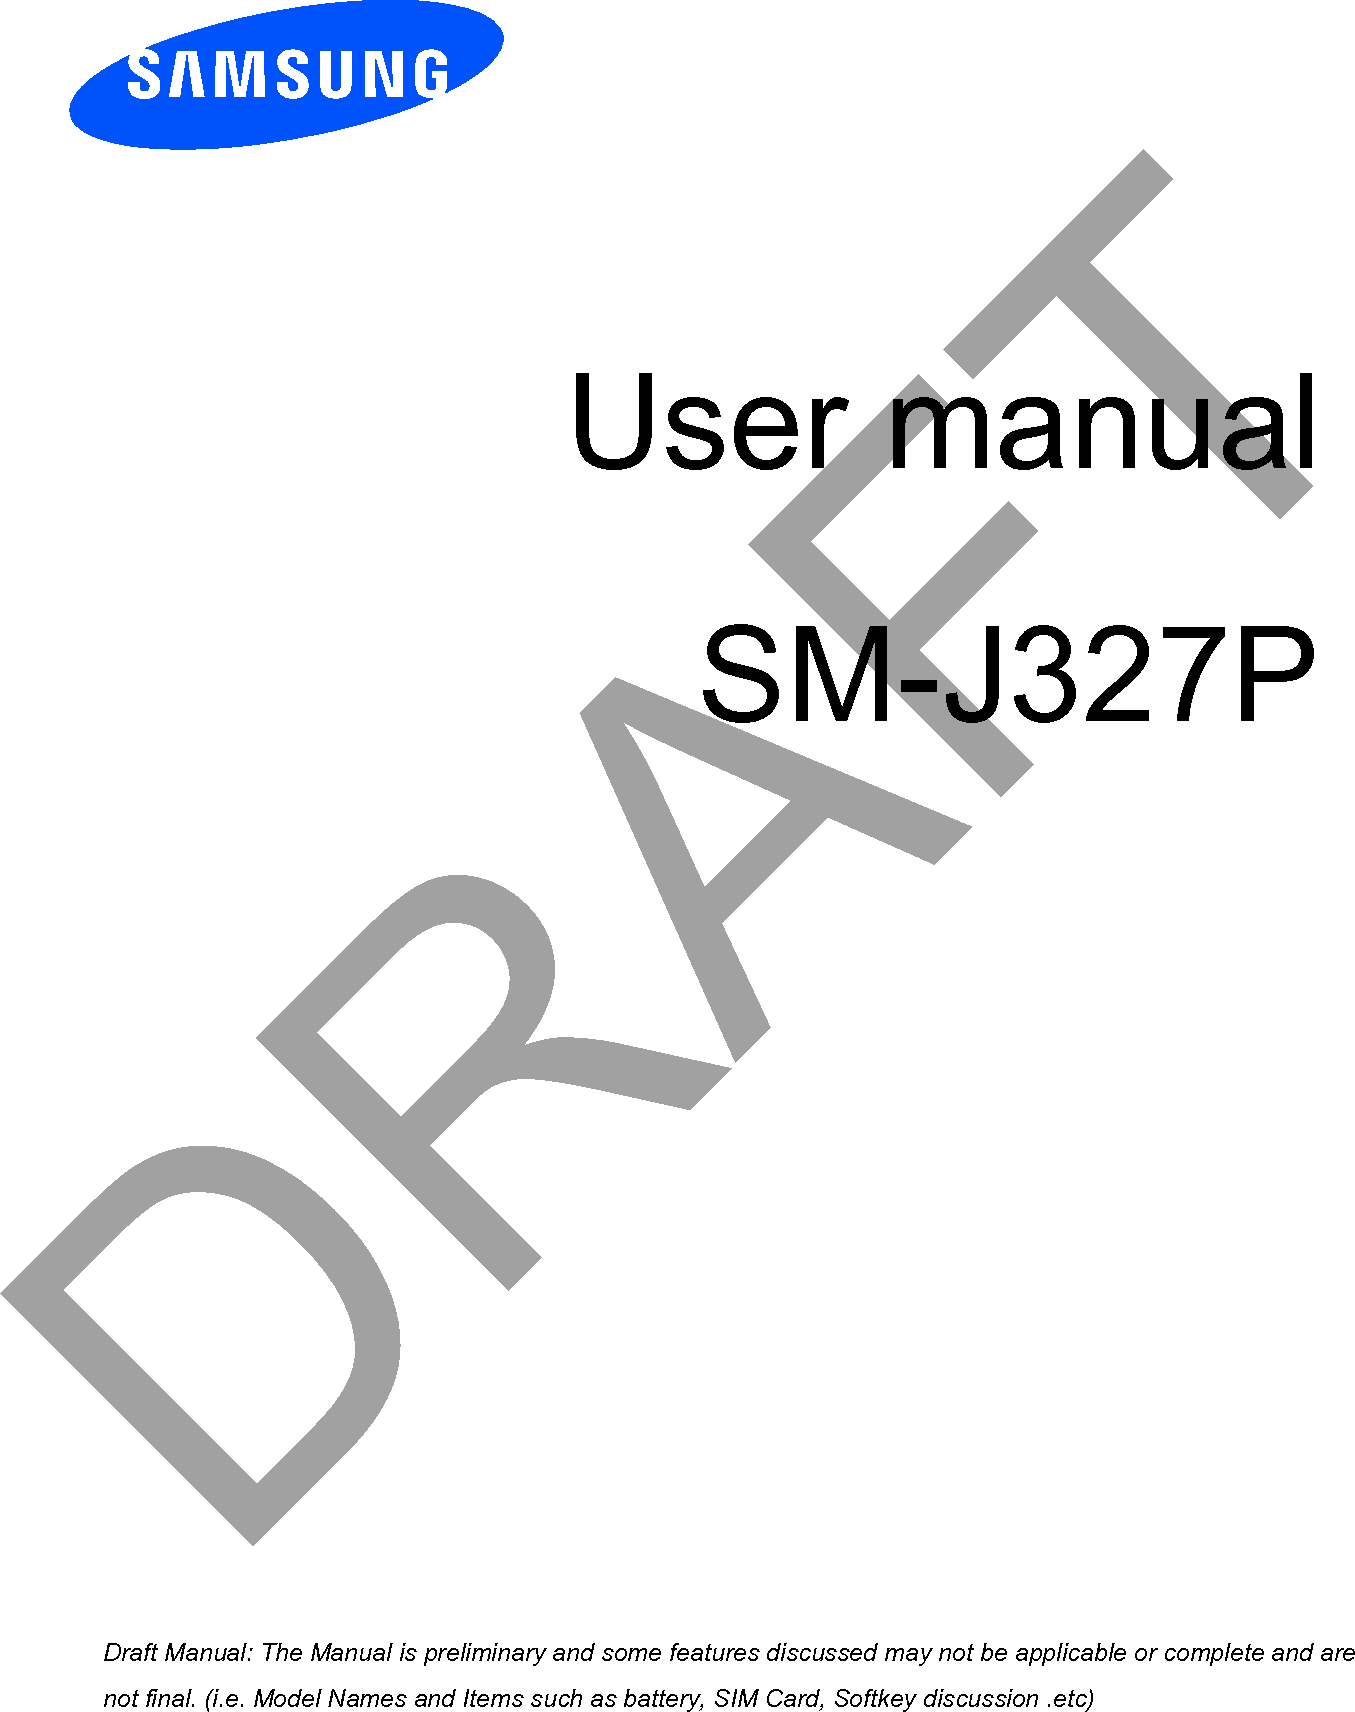 User manualSM-J327PDRAFTa ana  ana  na and  a dd a n  aa   and a n na  d a and   a a  ad  dn 